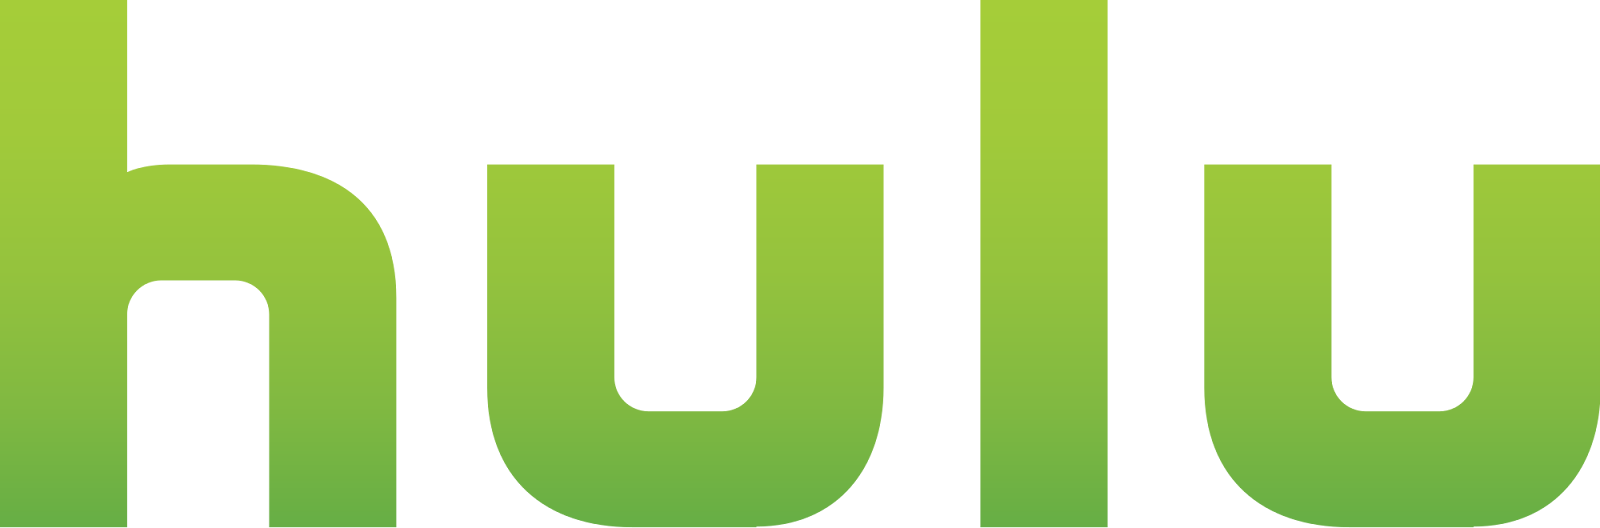 File:Hulu logo.svg - Wikimedia Commons